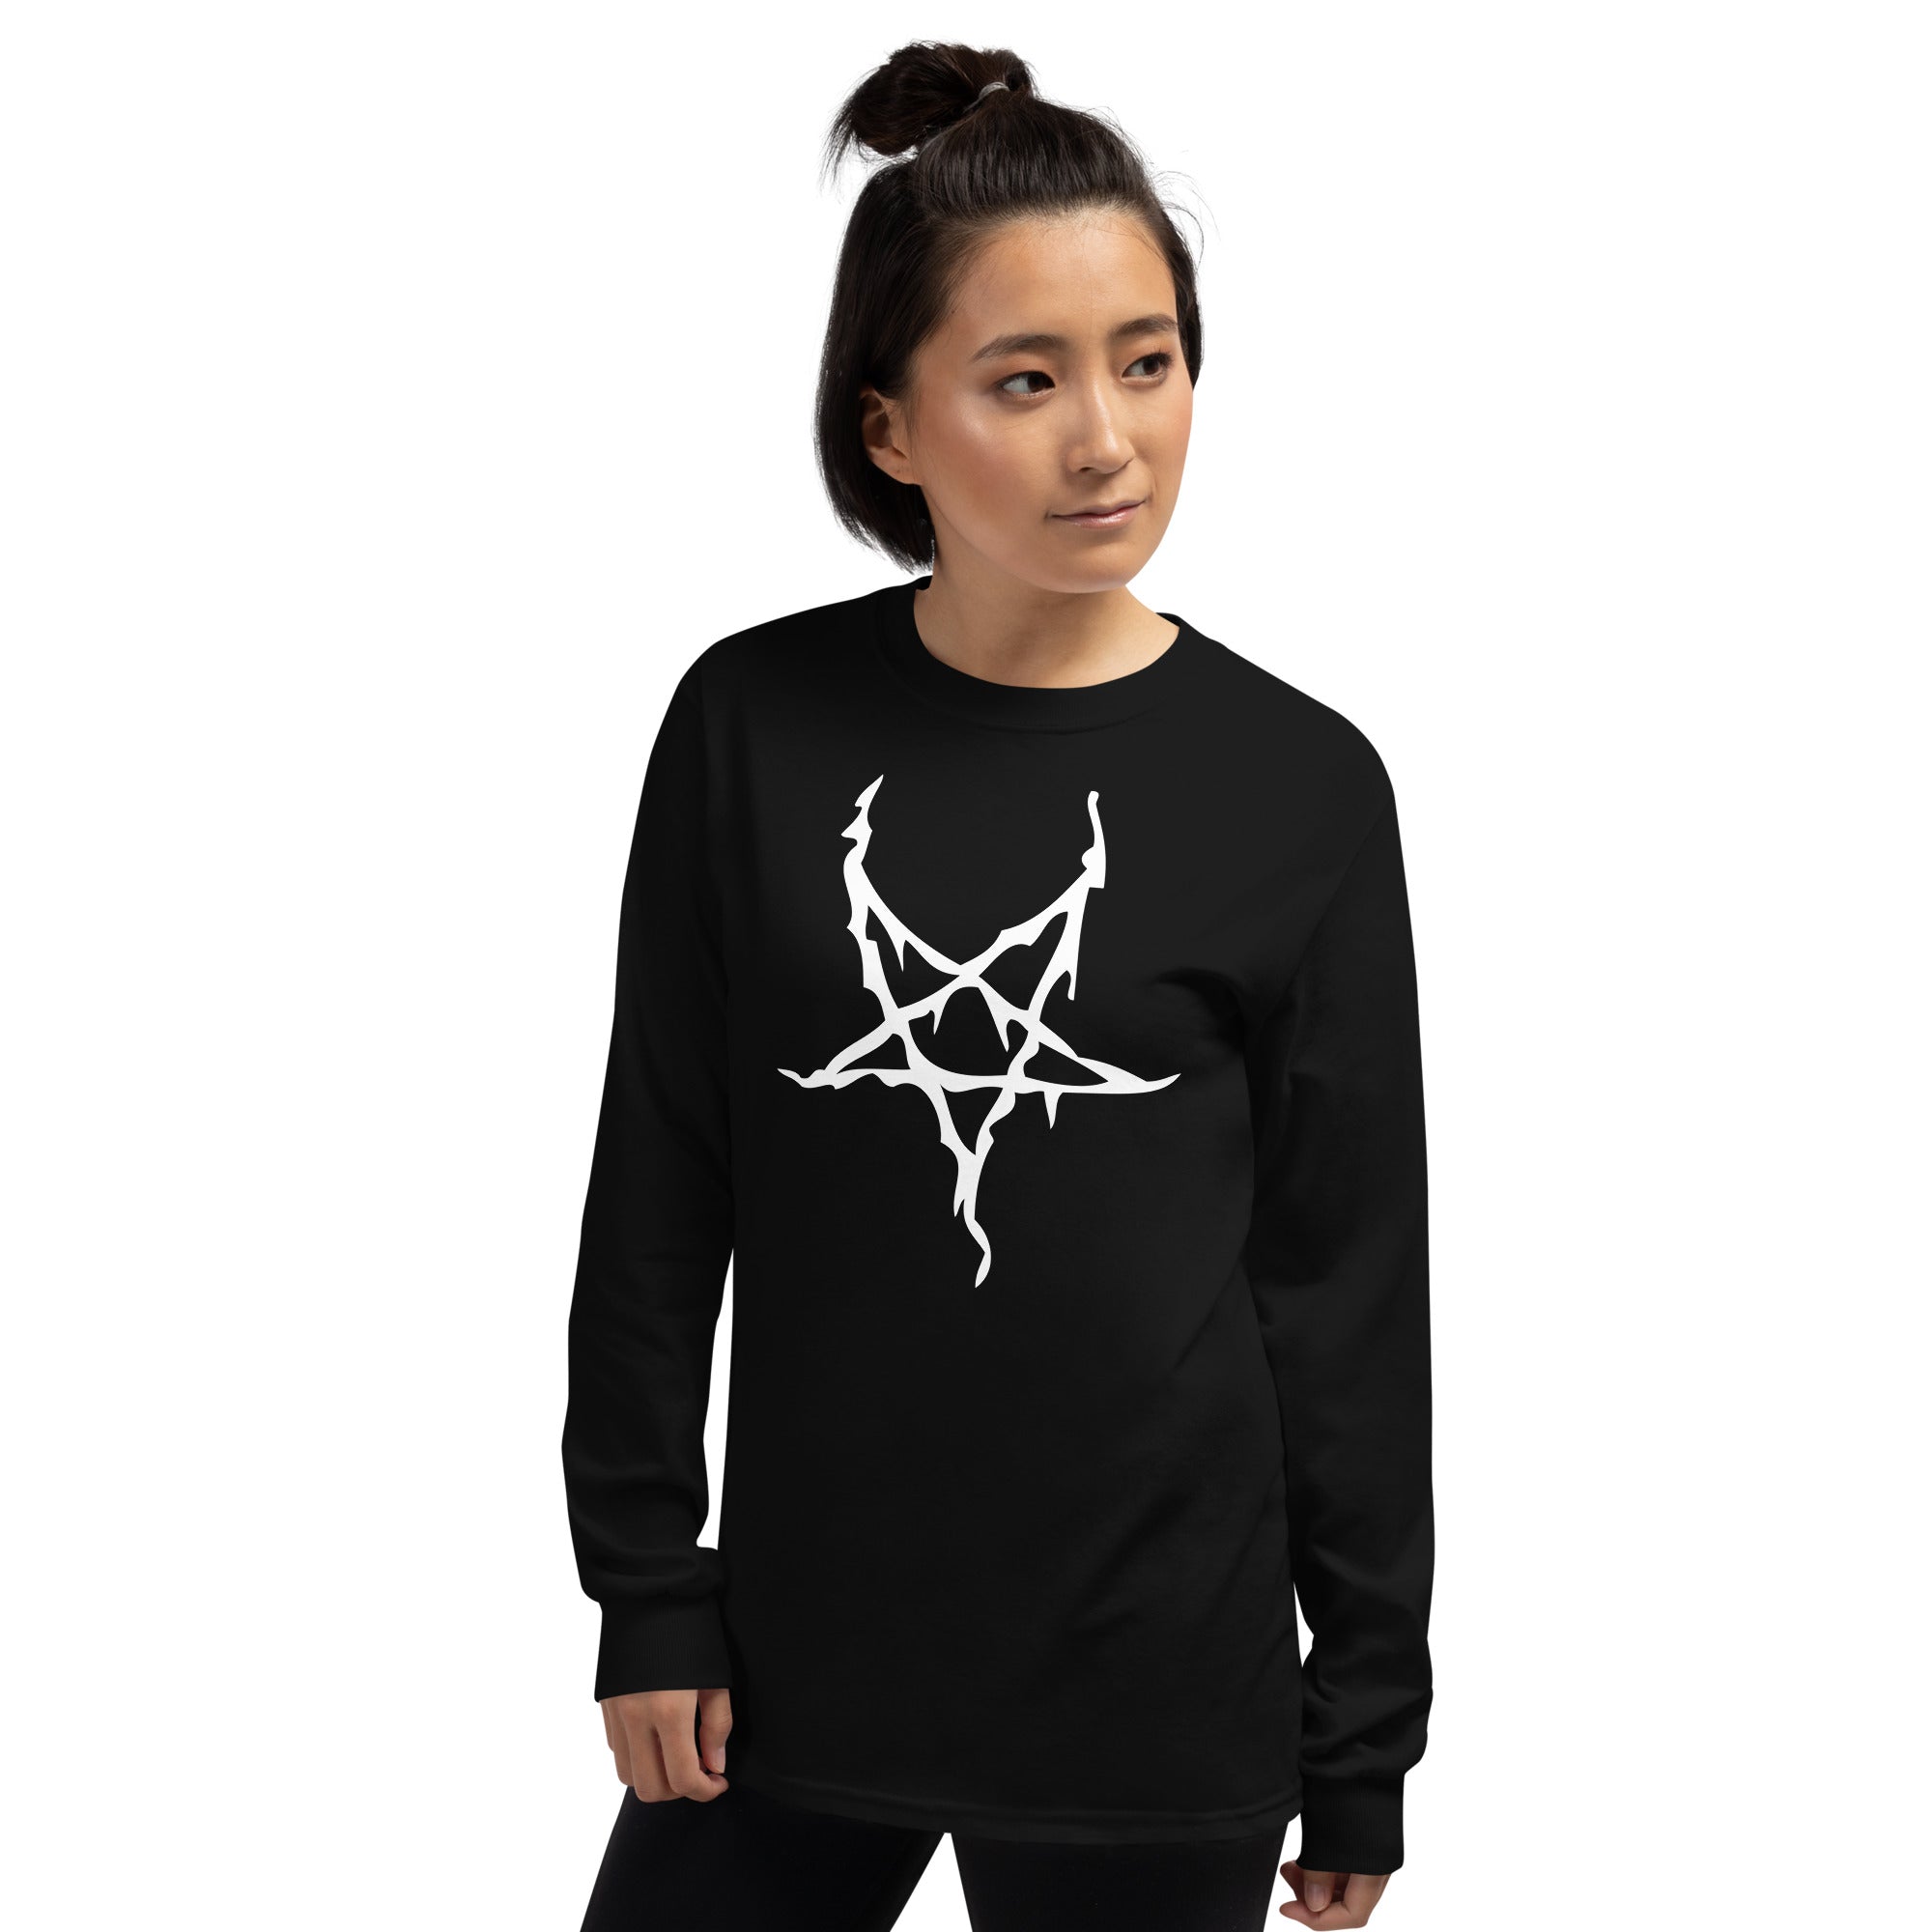 White Melting Inverted Pentagram Black Metal Style Long Sleeve Shirt